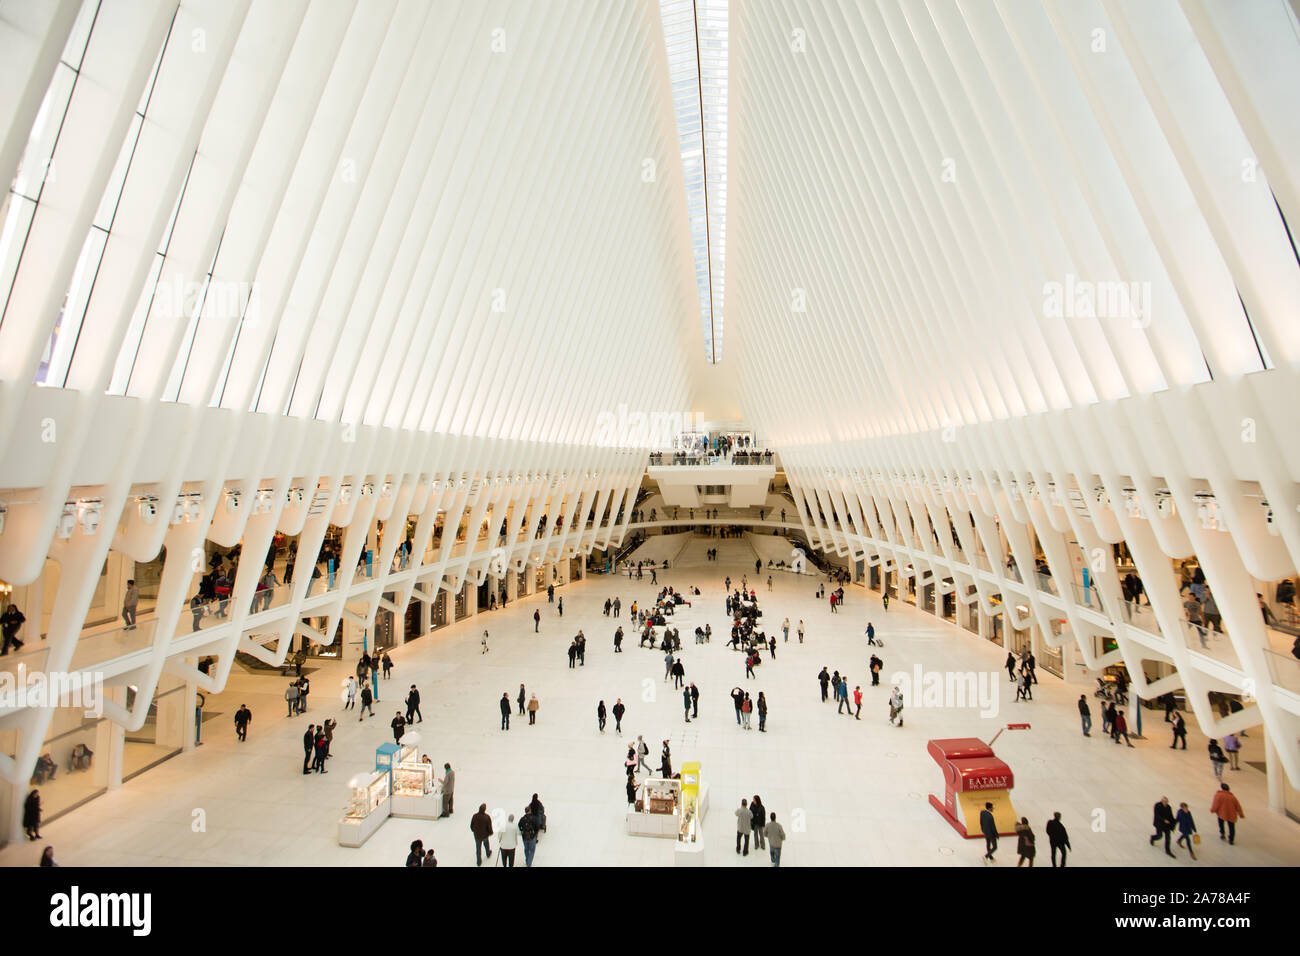 L'intérieur de l'Oculus, le bâtiment emblématique de la New York Port Authority plaque tournante du transport, au World Trade Center Banque D'Images